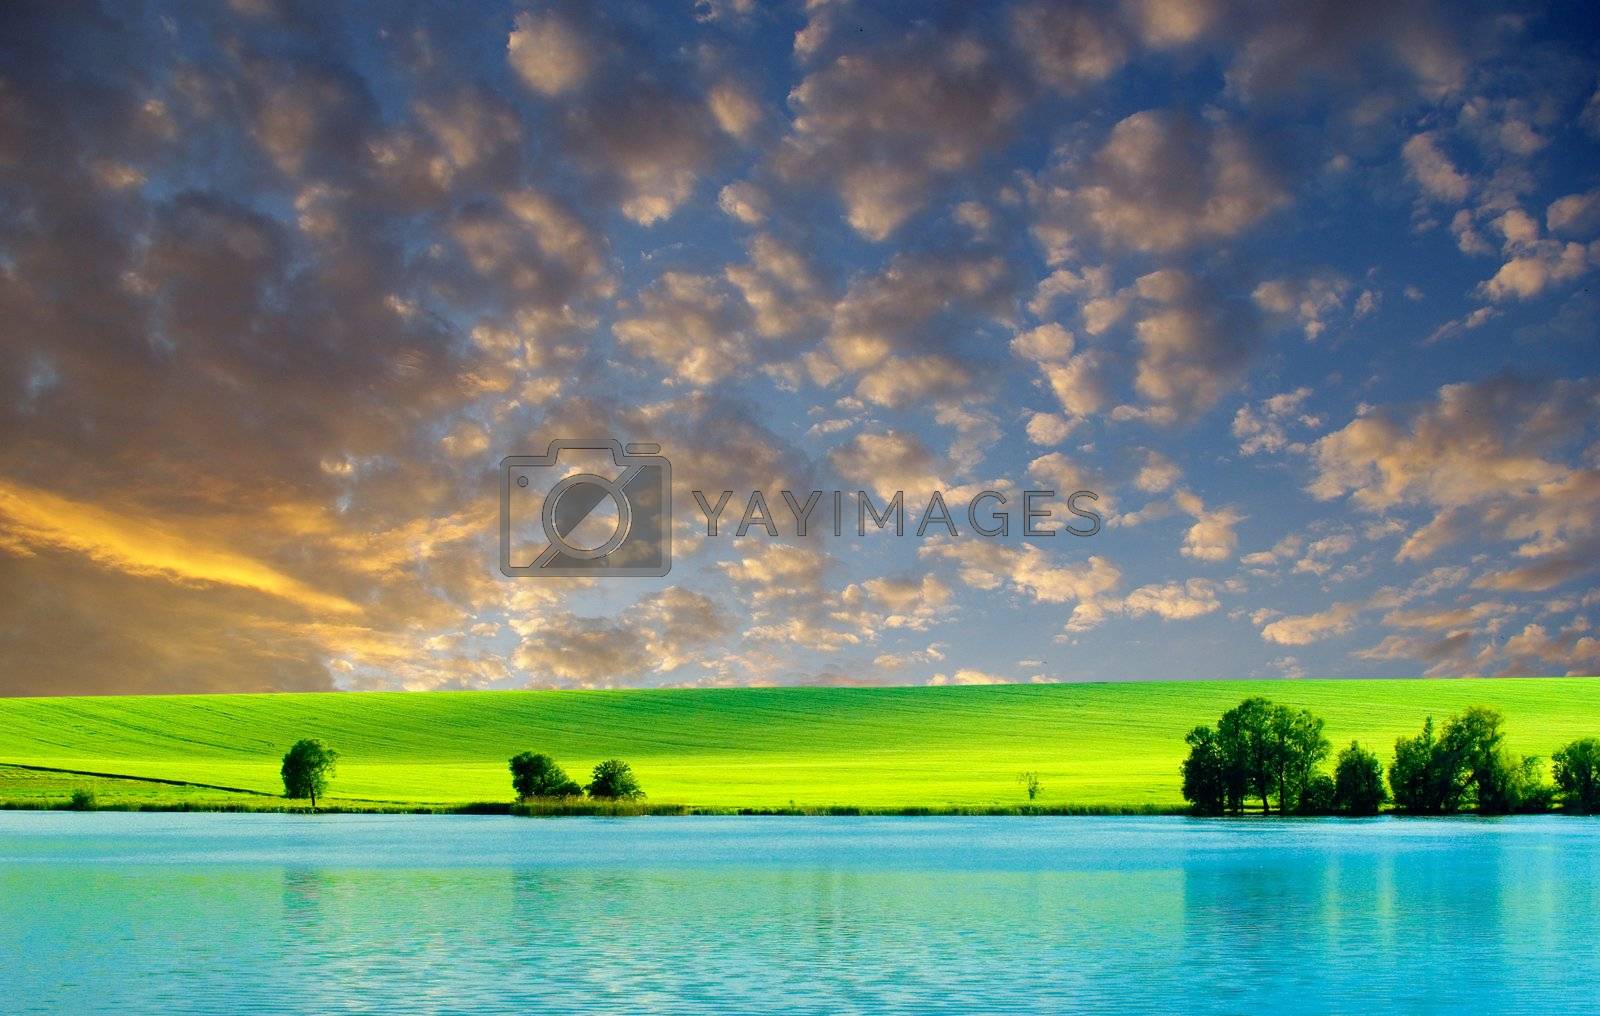 Royalty free image of  landscape by Pakhnyushchyy